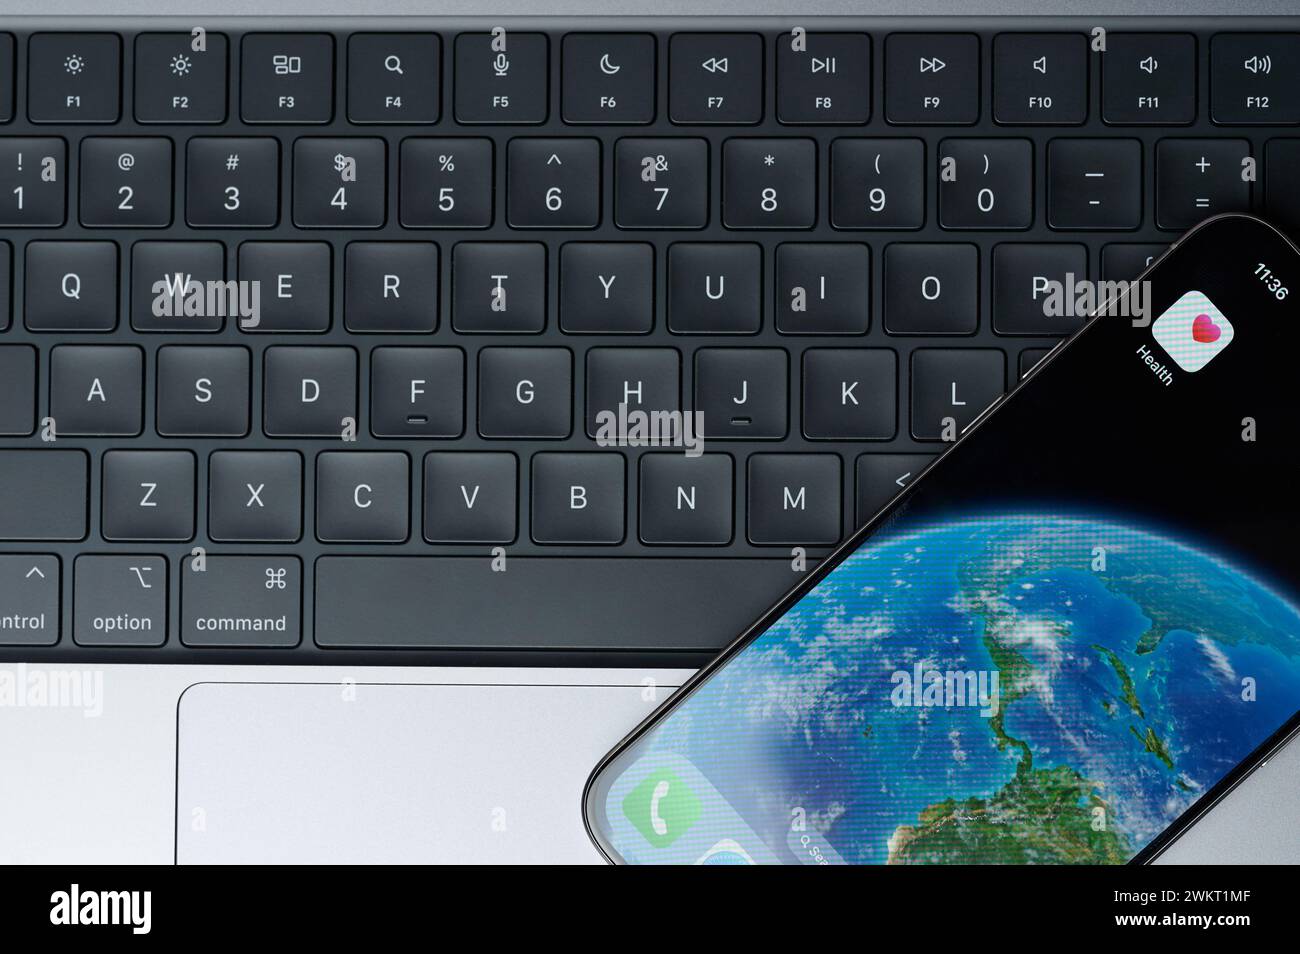 New York, USA - 20. Februar 2024: Apple Health App für iphone Smartphone Bildschirm mit Tastatur Hintergrund Stockfoto